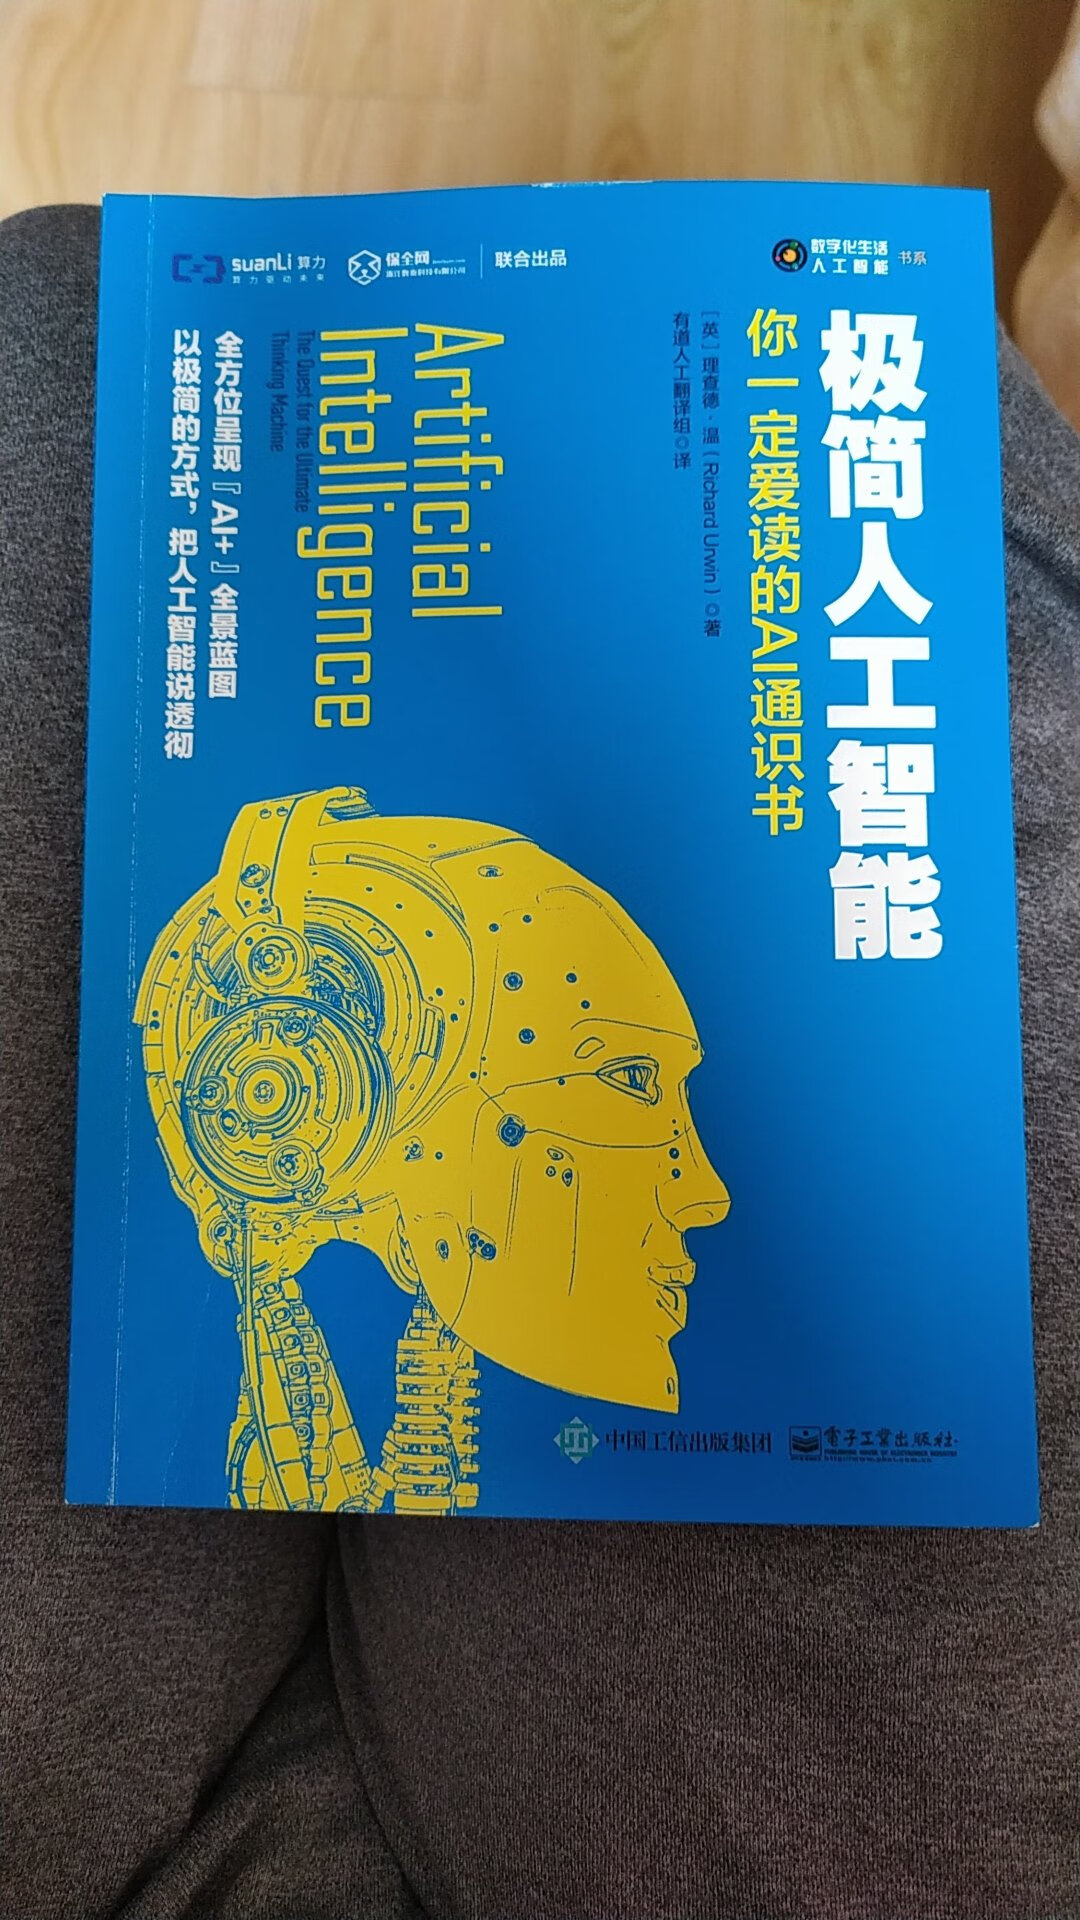 书不错，是学习人工智能一本非常不错的教材